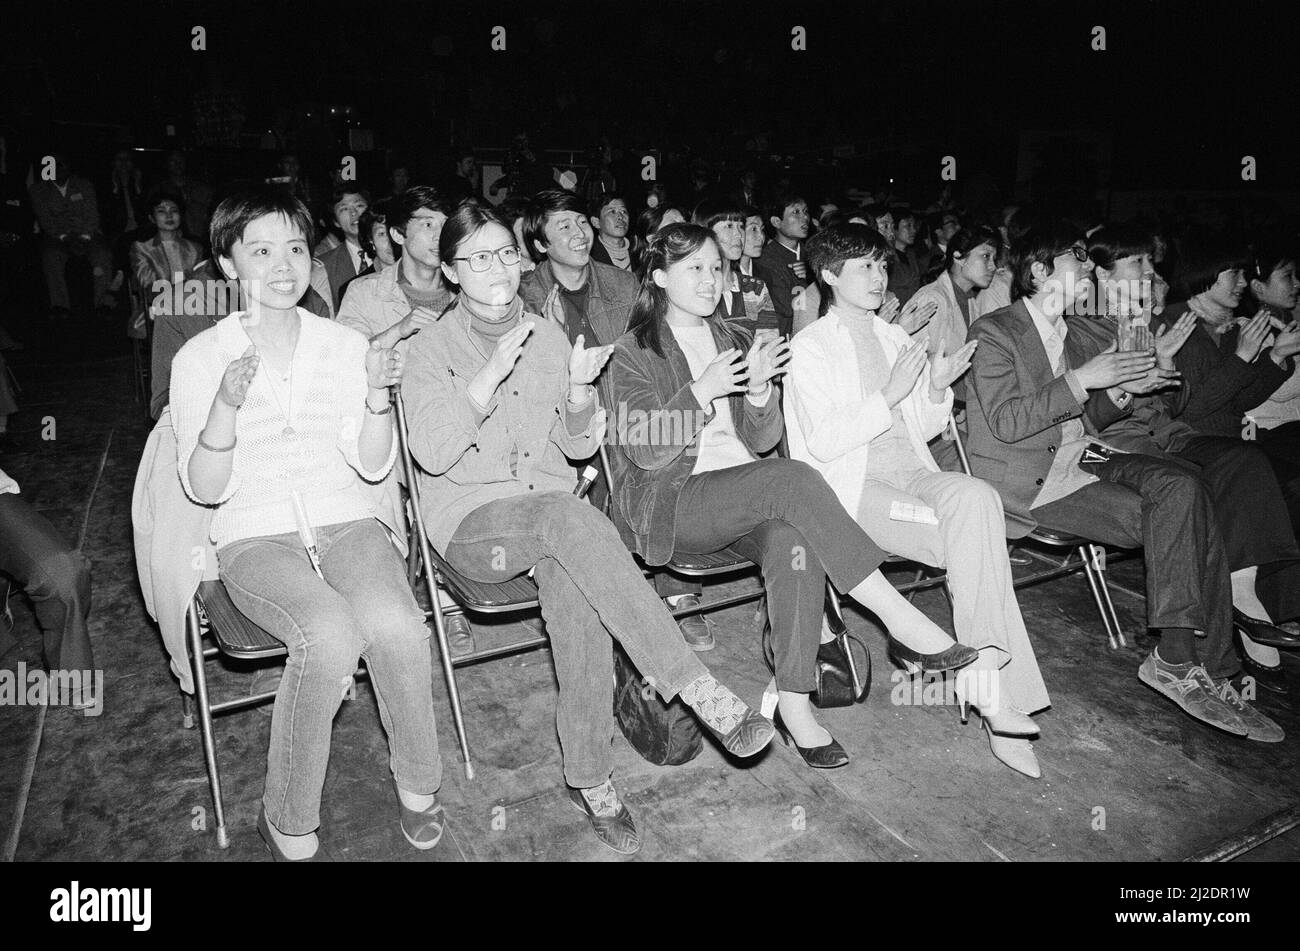 Fans klatschen mit und genießen die Darbietung von George Michael und Andrew Ridgely aus Wham ! In China. 1985. Wham! Waren auf einer 10-tägigen Tour. 1985 erwachte China nach der eigenen Kulturrevolution zur Welt draußen, und Wham! Waren die erste westliche Band, die im kommunistischen China spielte. Aufgenommen um den 9.. April 1985 Stockfoto